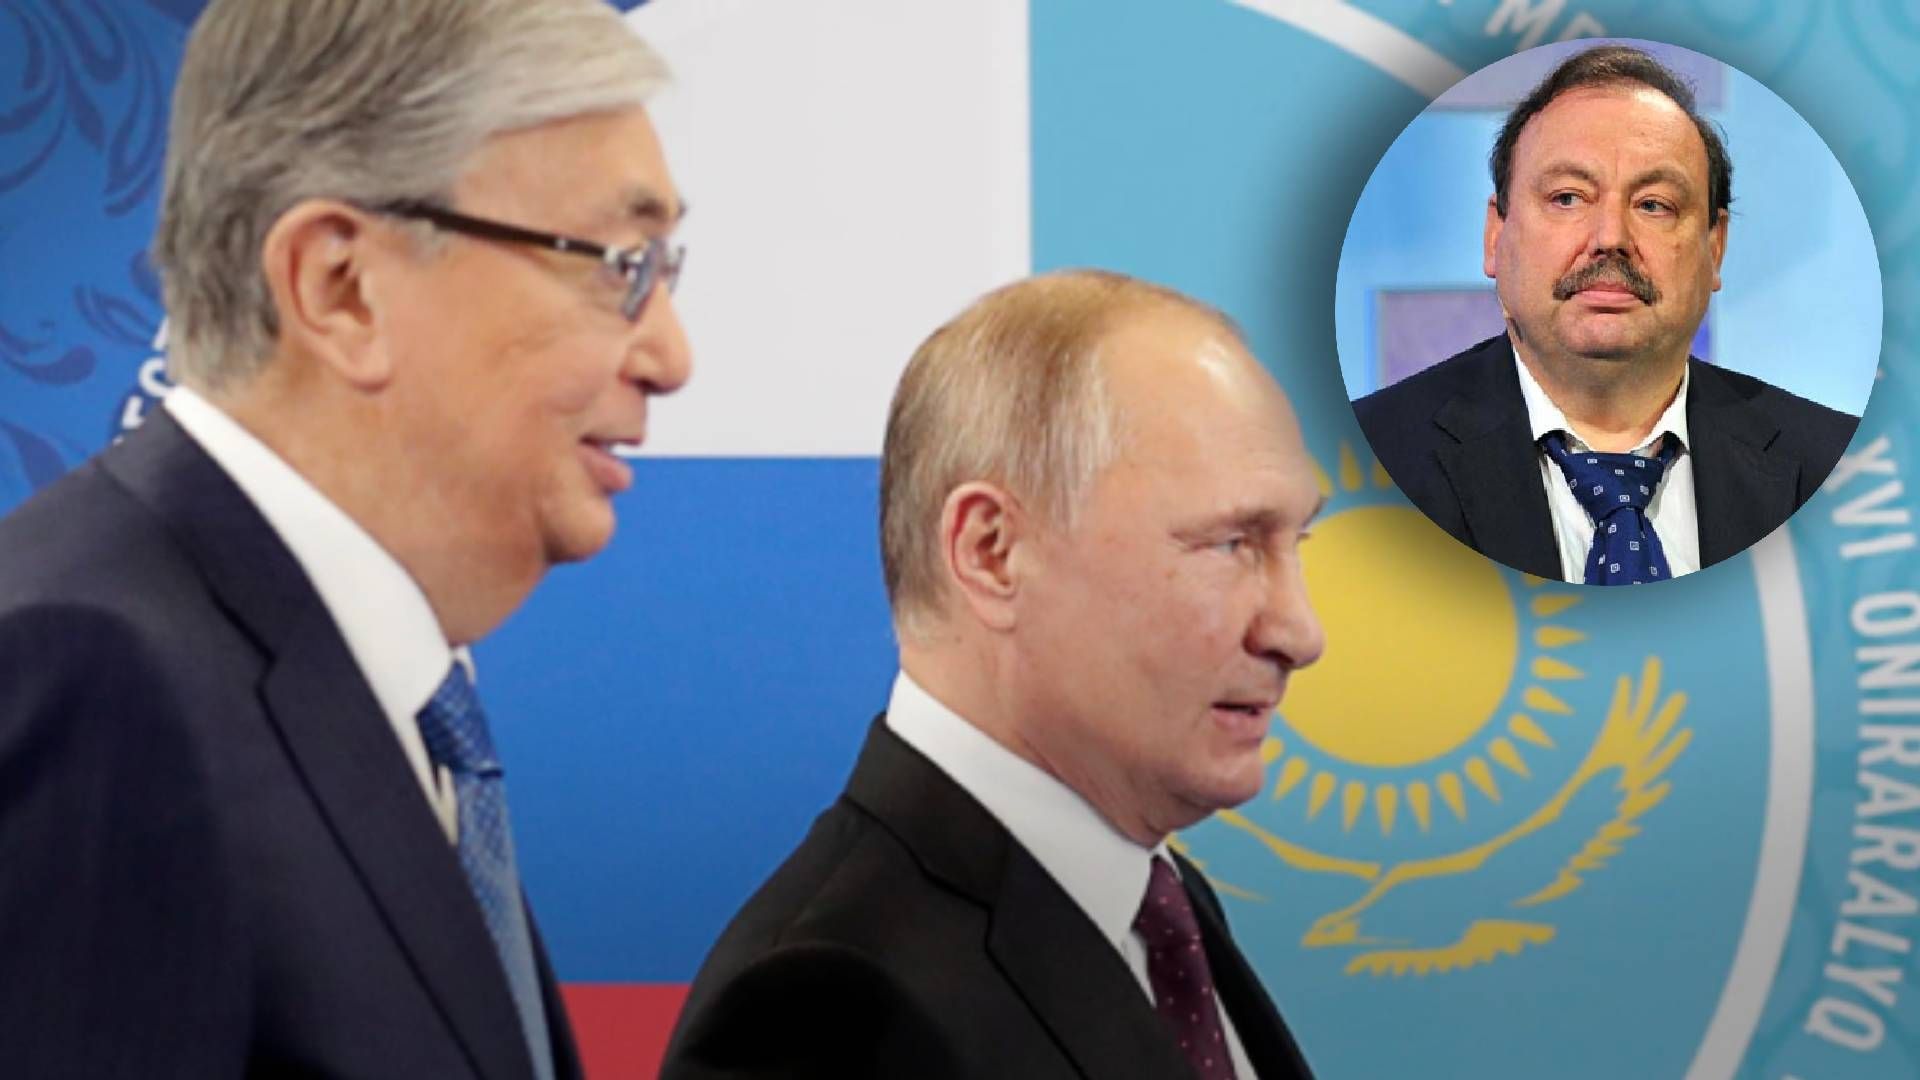 Токаев намекнул Путину, что он проиграл, – Гудков о заявлении по Донбассу